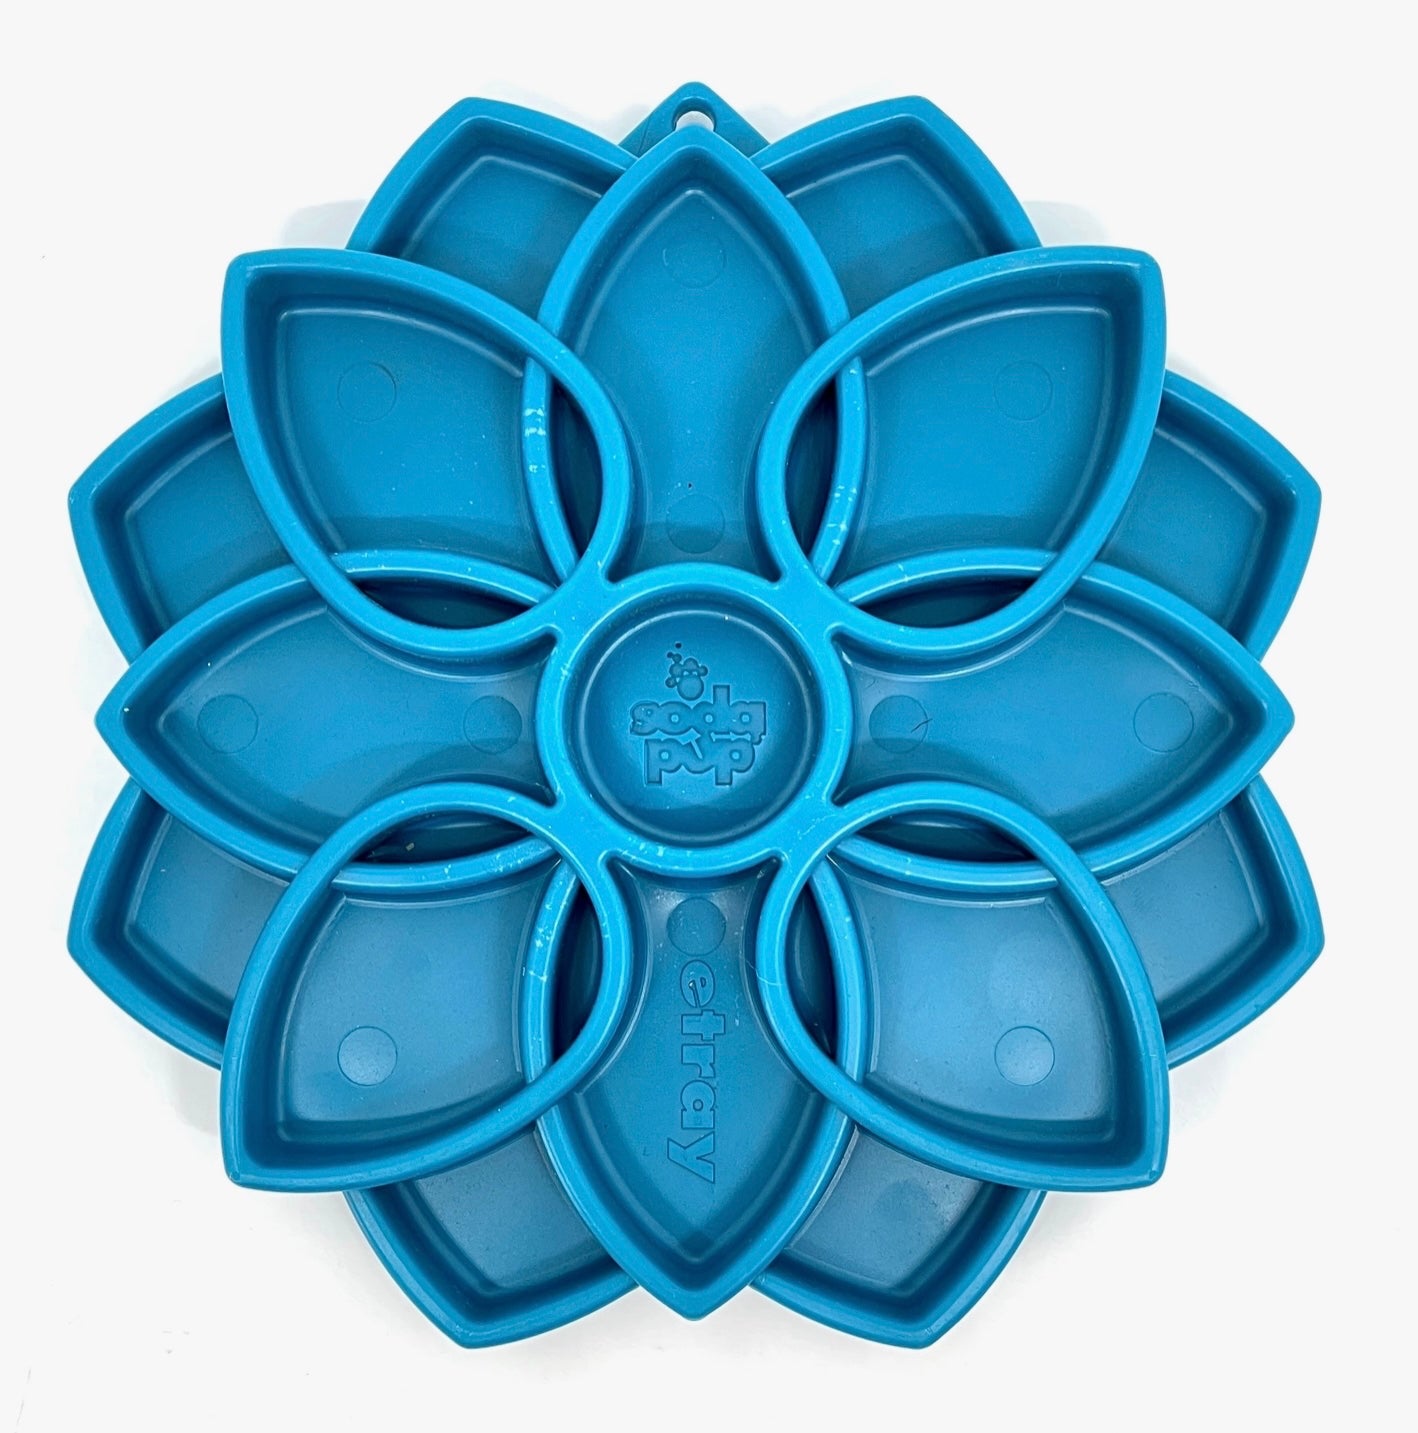 Mandala Design Enrichment Tray